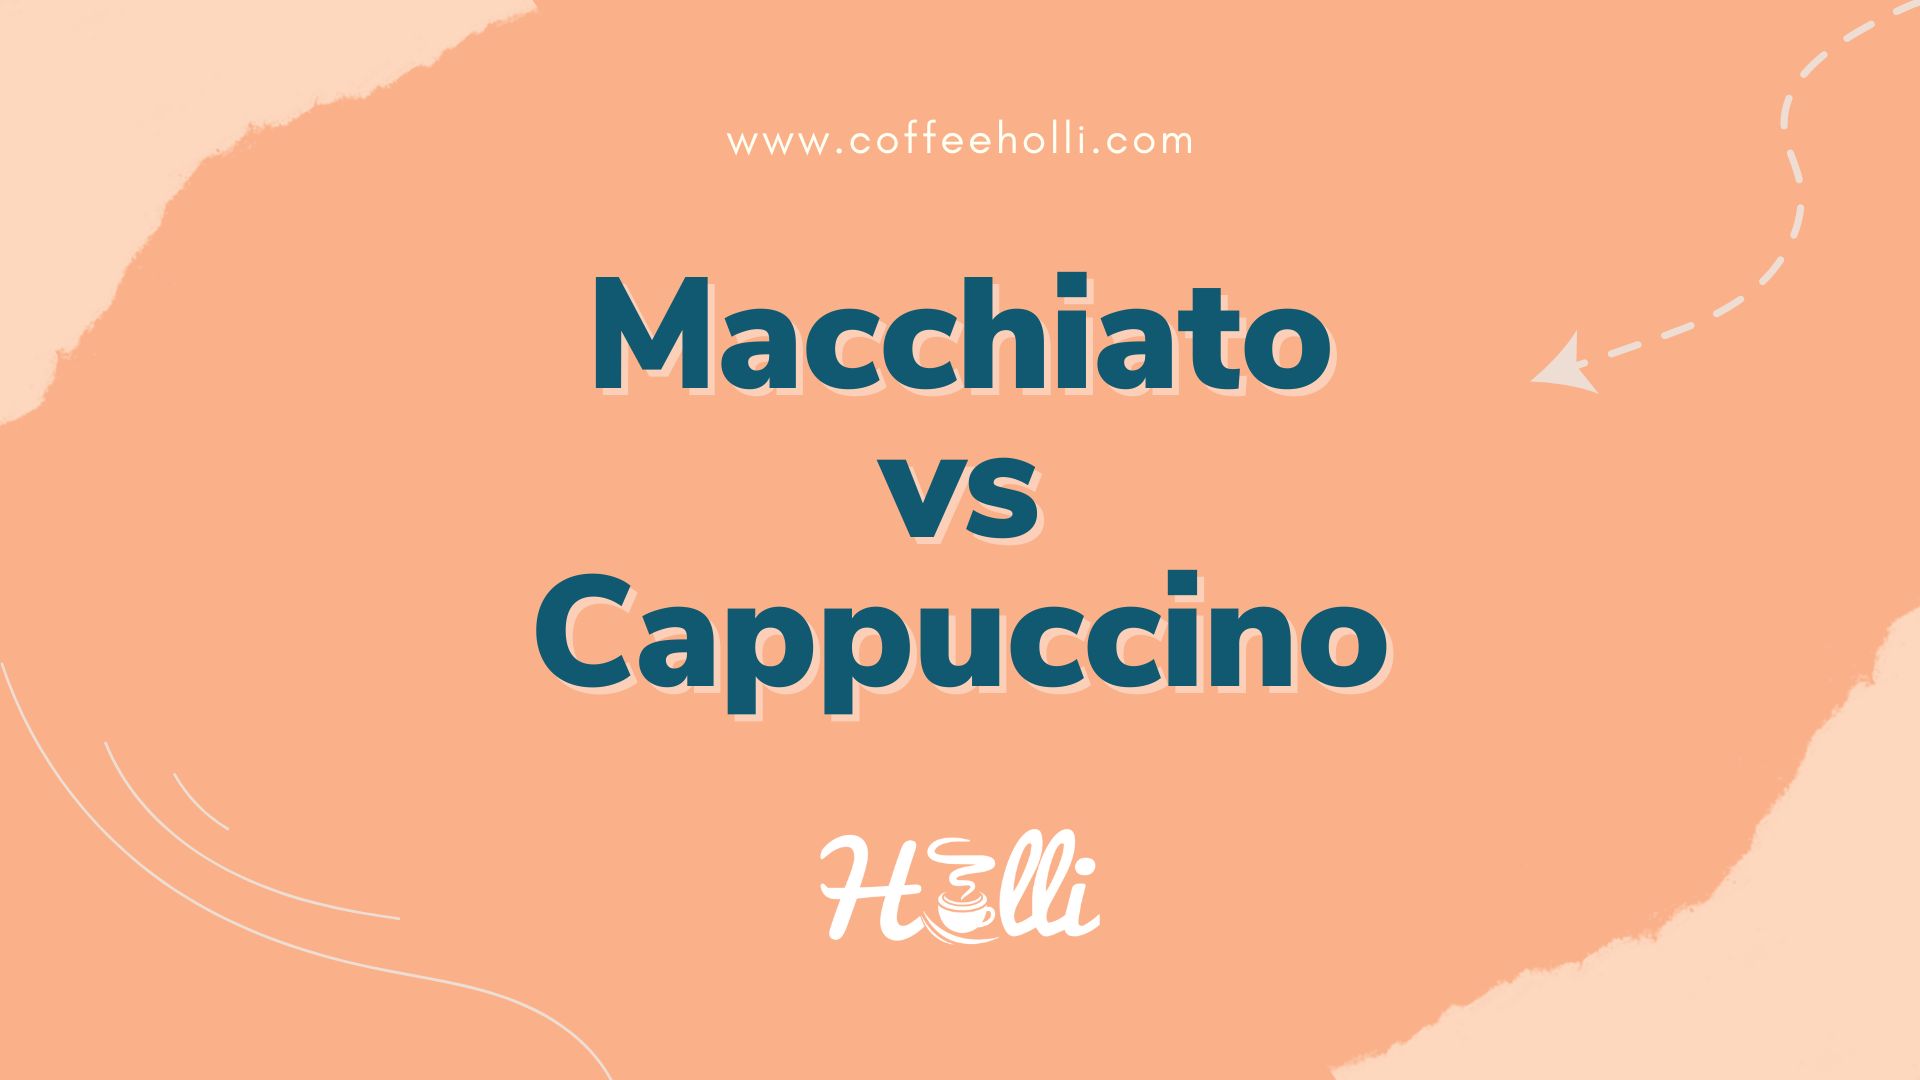 Macchiato vs Cappuccino